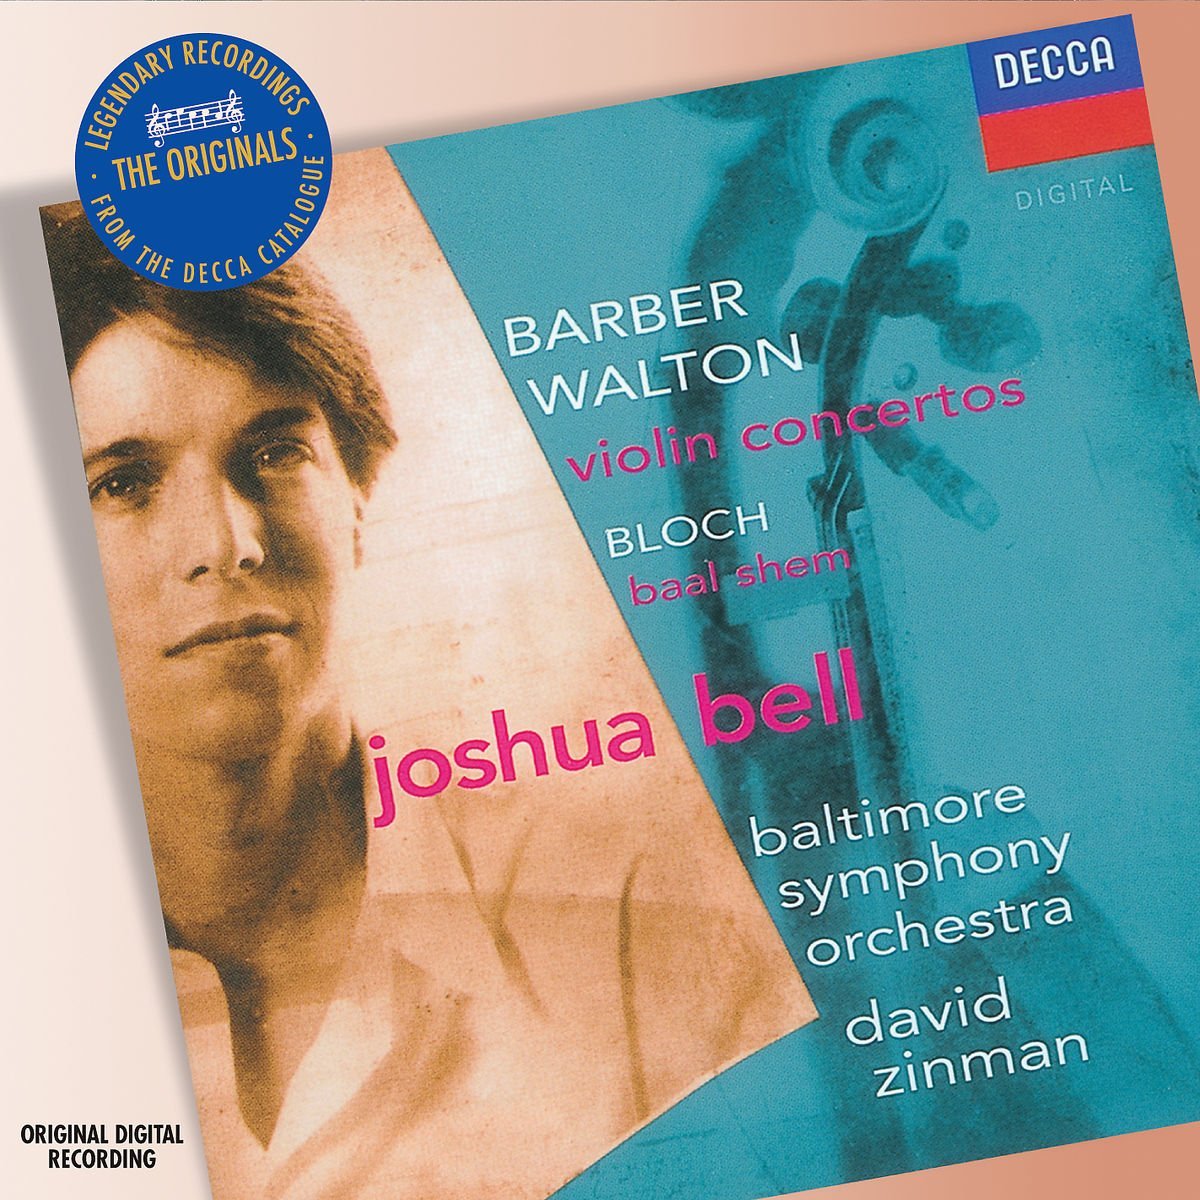 Barber/Walton - Violin Concertos | Baltimore Symphony Orchestra, David Zinman, Joshua Bell